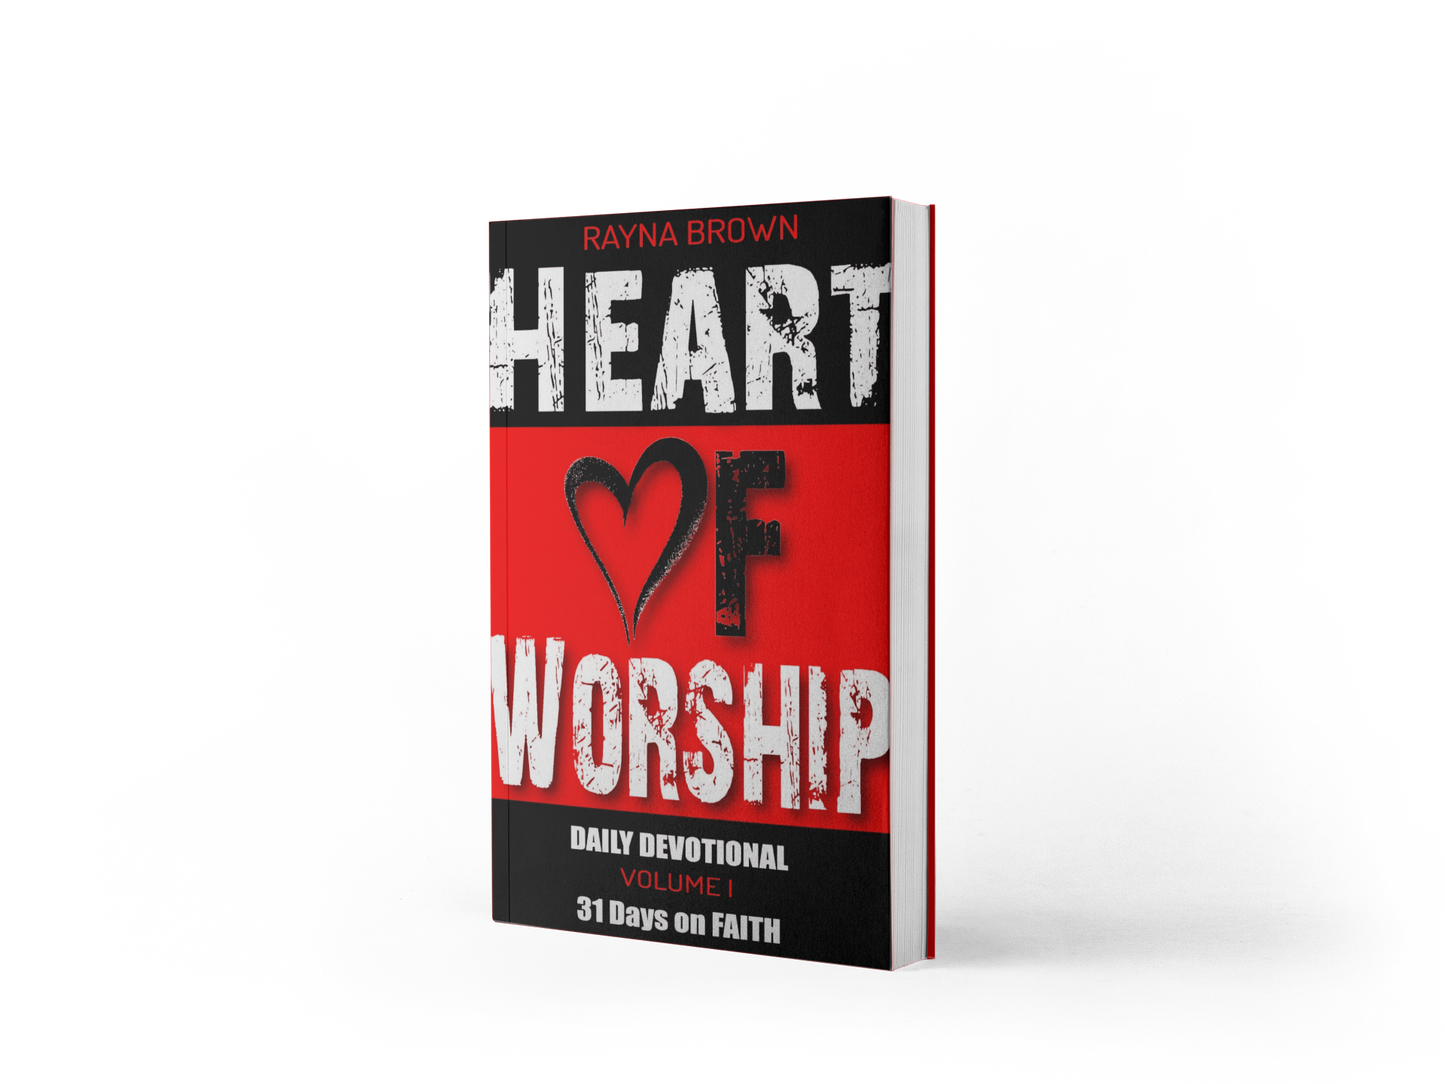 Heart of Worship Daily Devotional Vol. 1 - 31 Days on Faith